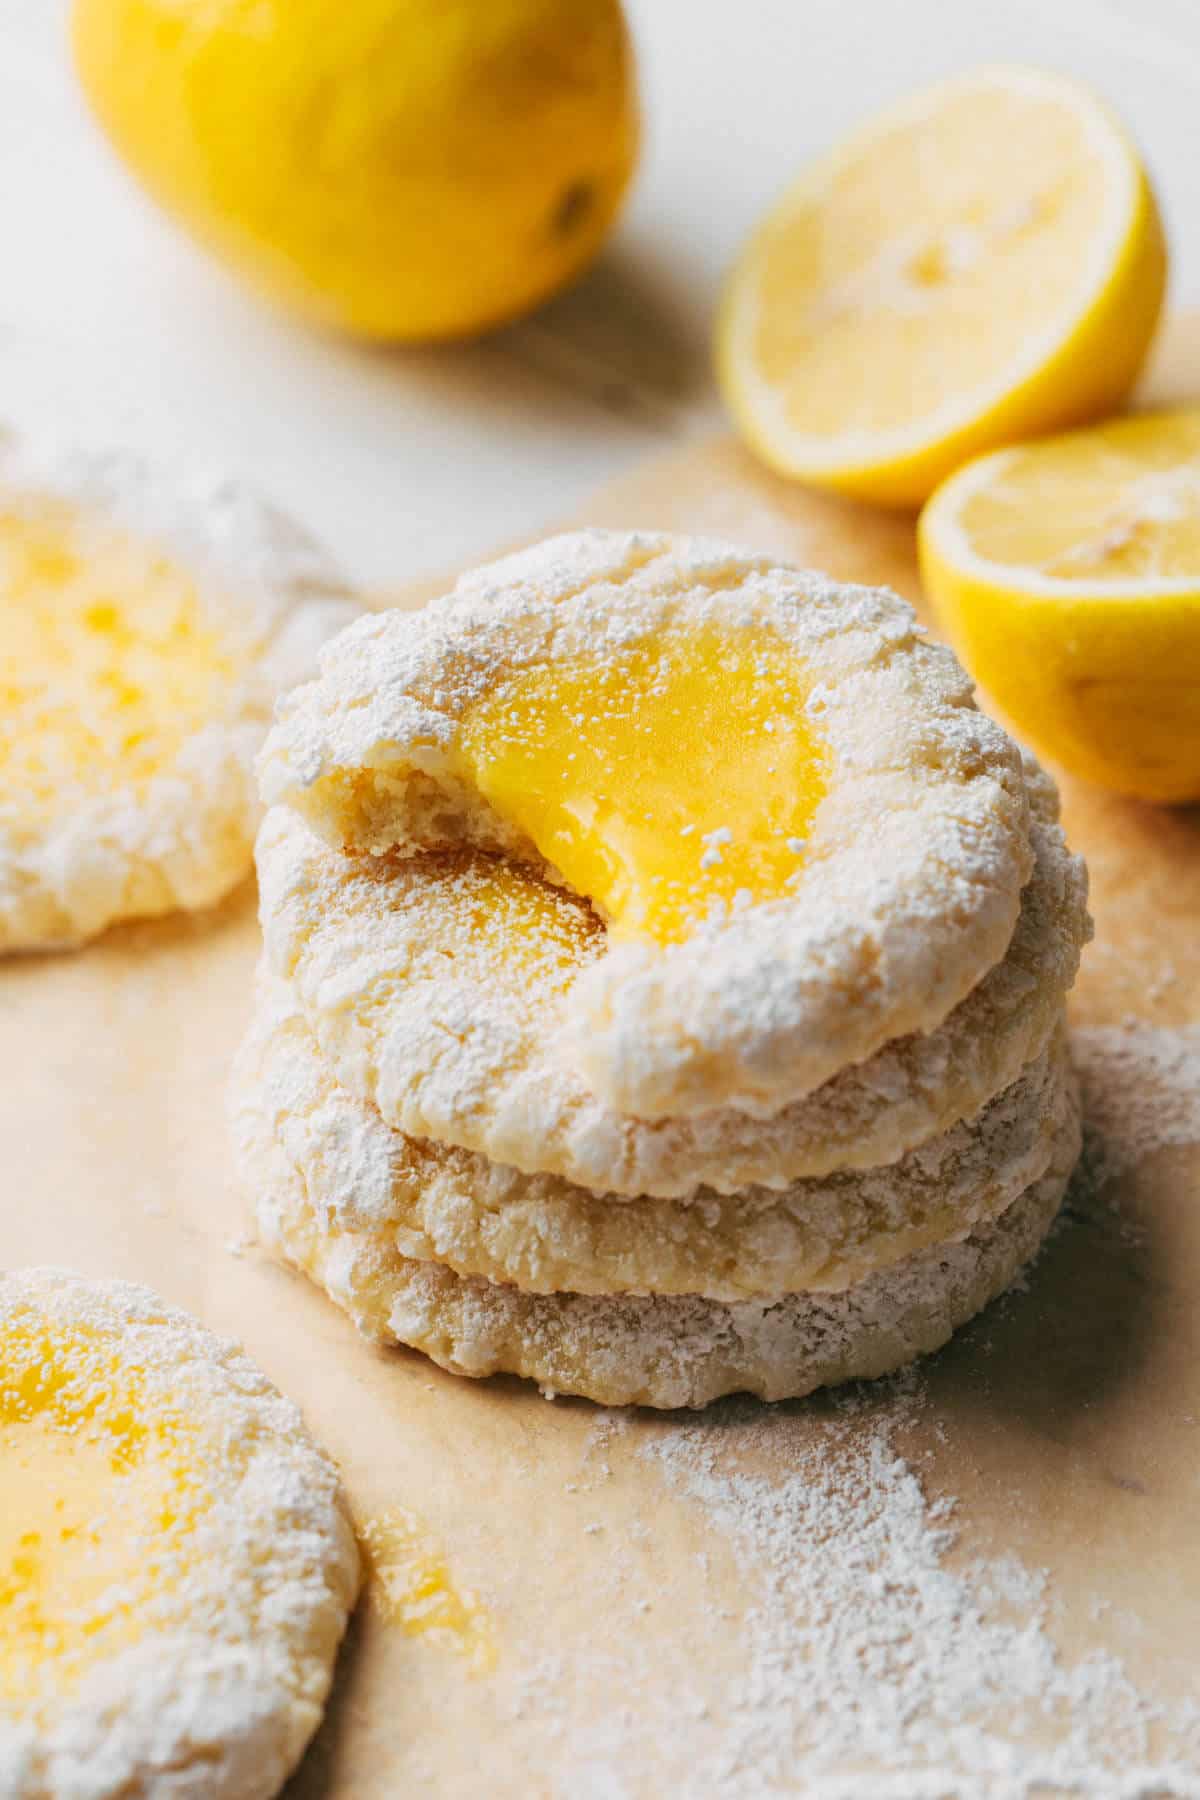 https://butternutbakeryblog.com/wp-content/uploads/2021/04/lemon-bar-butter-cookies.jpg